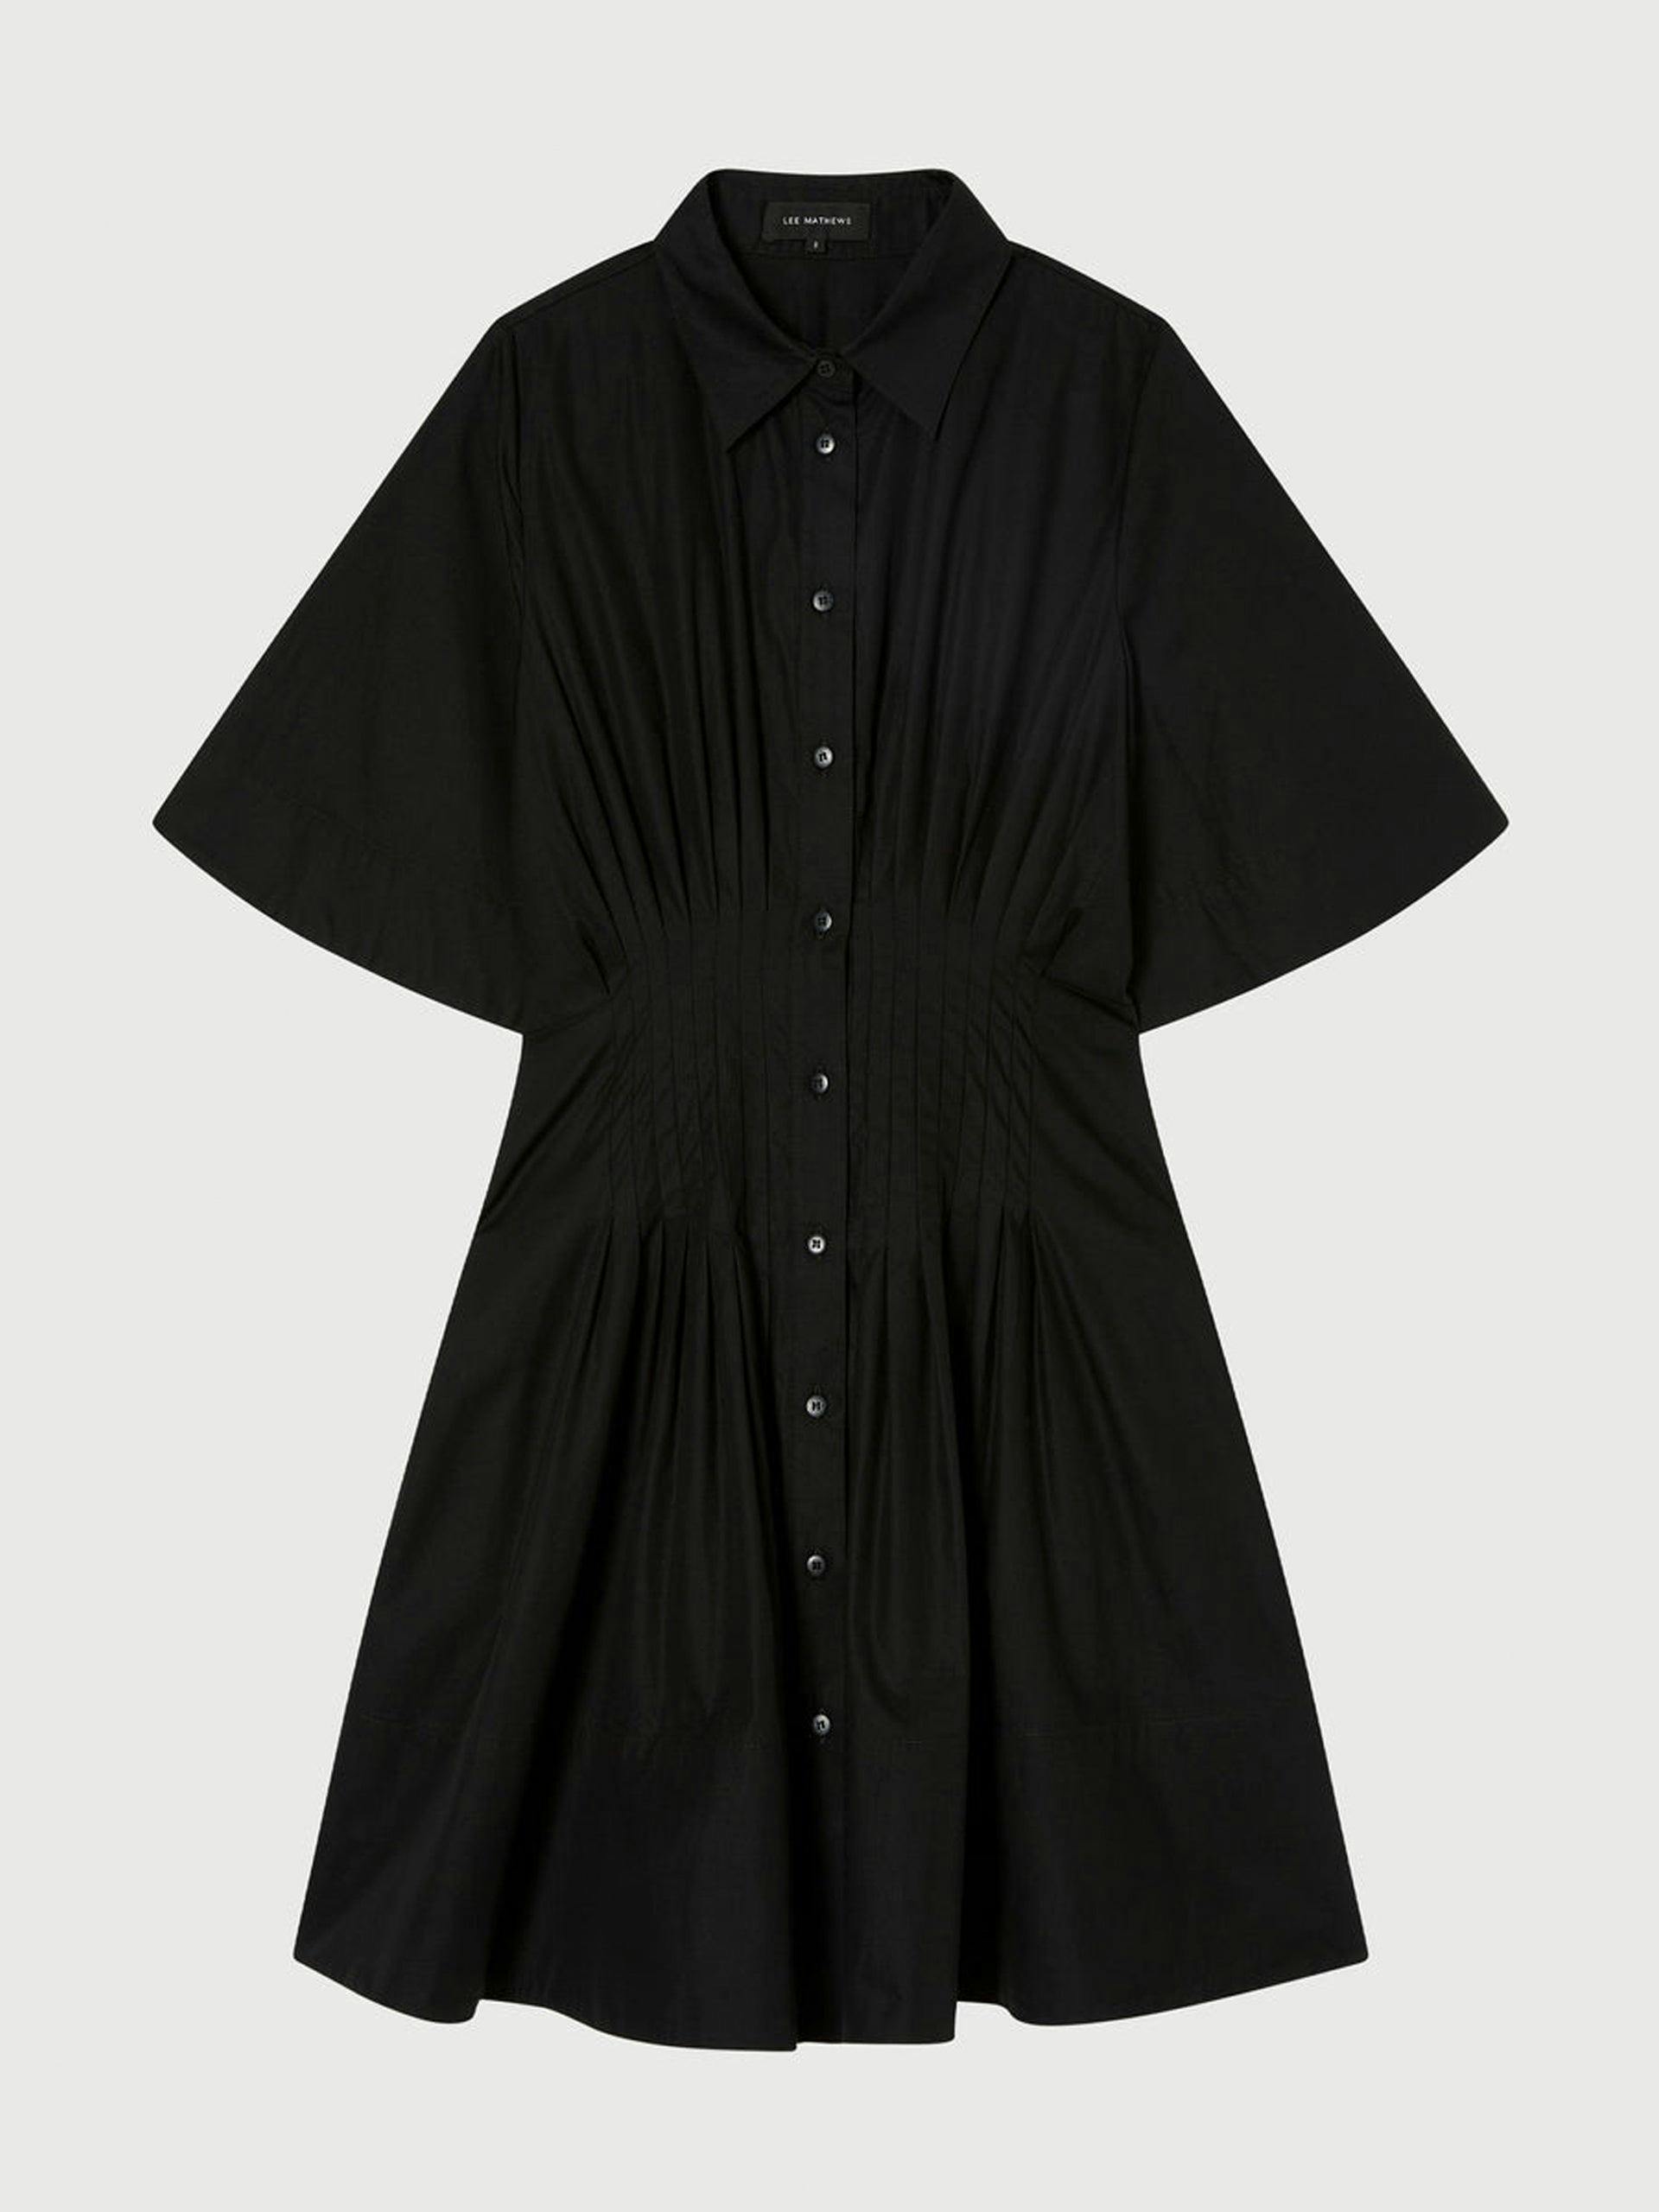 Black mini shirt dress